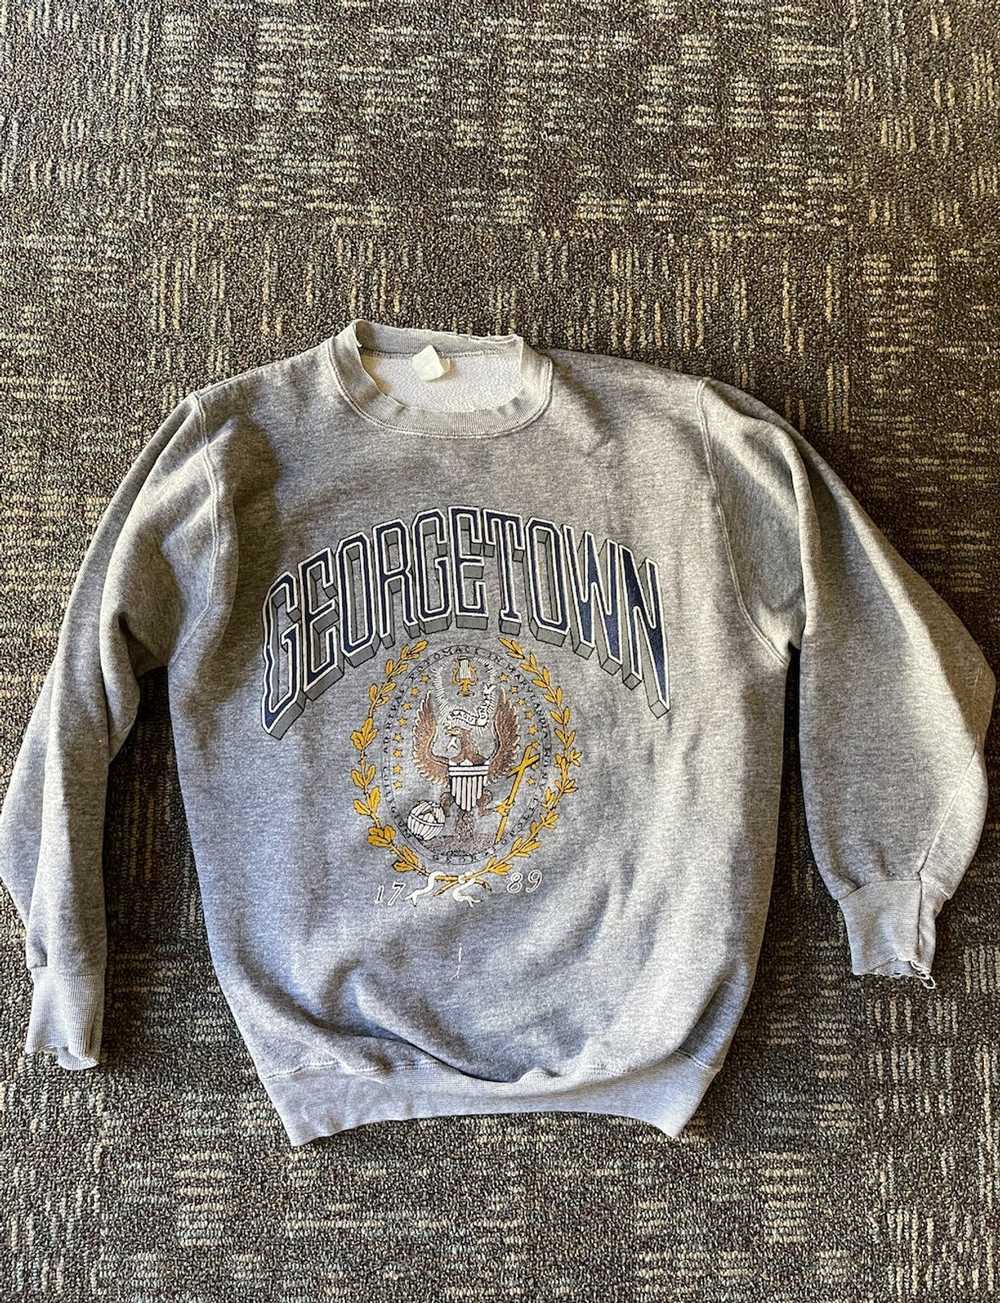 Vintage Vintage Georgetown Sweatshirt - image 1